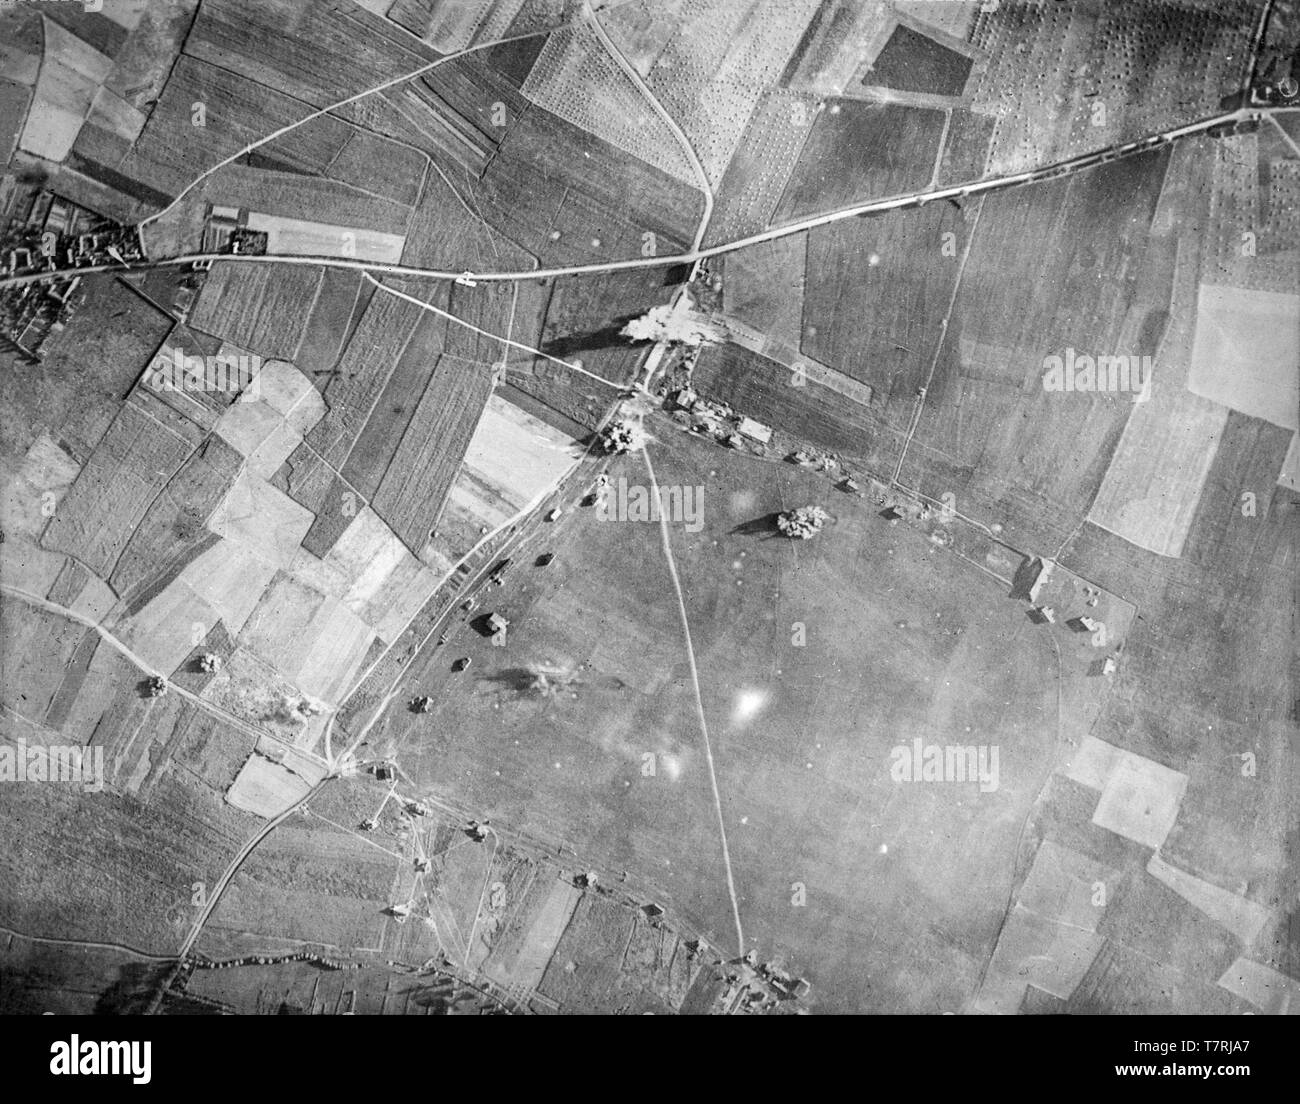 Eine zeitgenössische britische schwarz-weiß Foto 1917 von einem Flugzeug getroffen während des Ersten Weltkrieges. Foto zeigt den Bombenanschlag auf ein Ziel im Norden Frankreichs. Ein britisches Flugzeug kann in kleinen Detail nur über die Straße von links nach rechts fliegen gesehen werden, der gerade seine Bomben abgeworfen. Luftkriegstoten Weltkrieg ein. Stockfoto